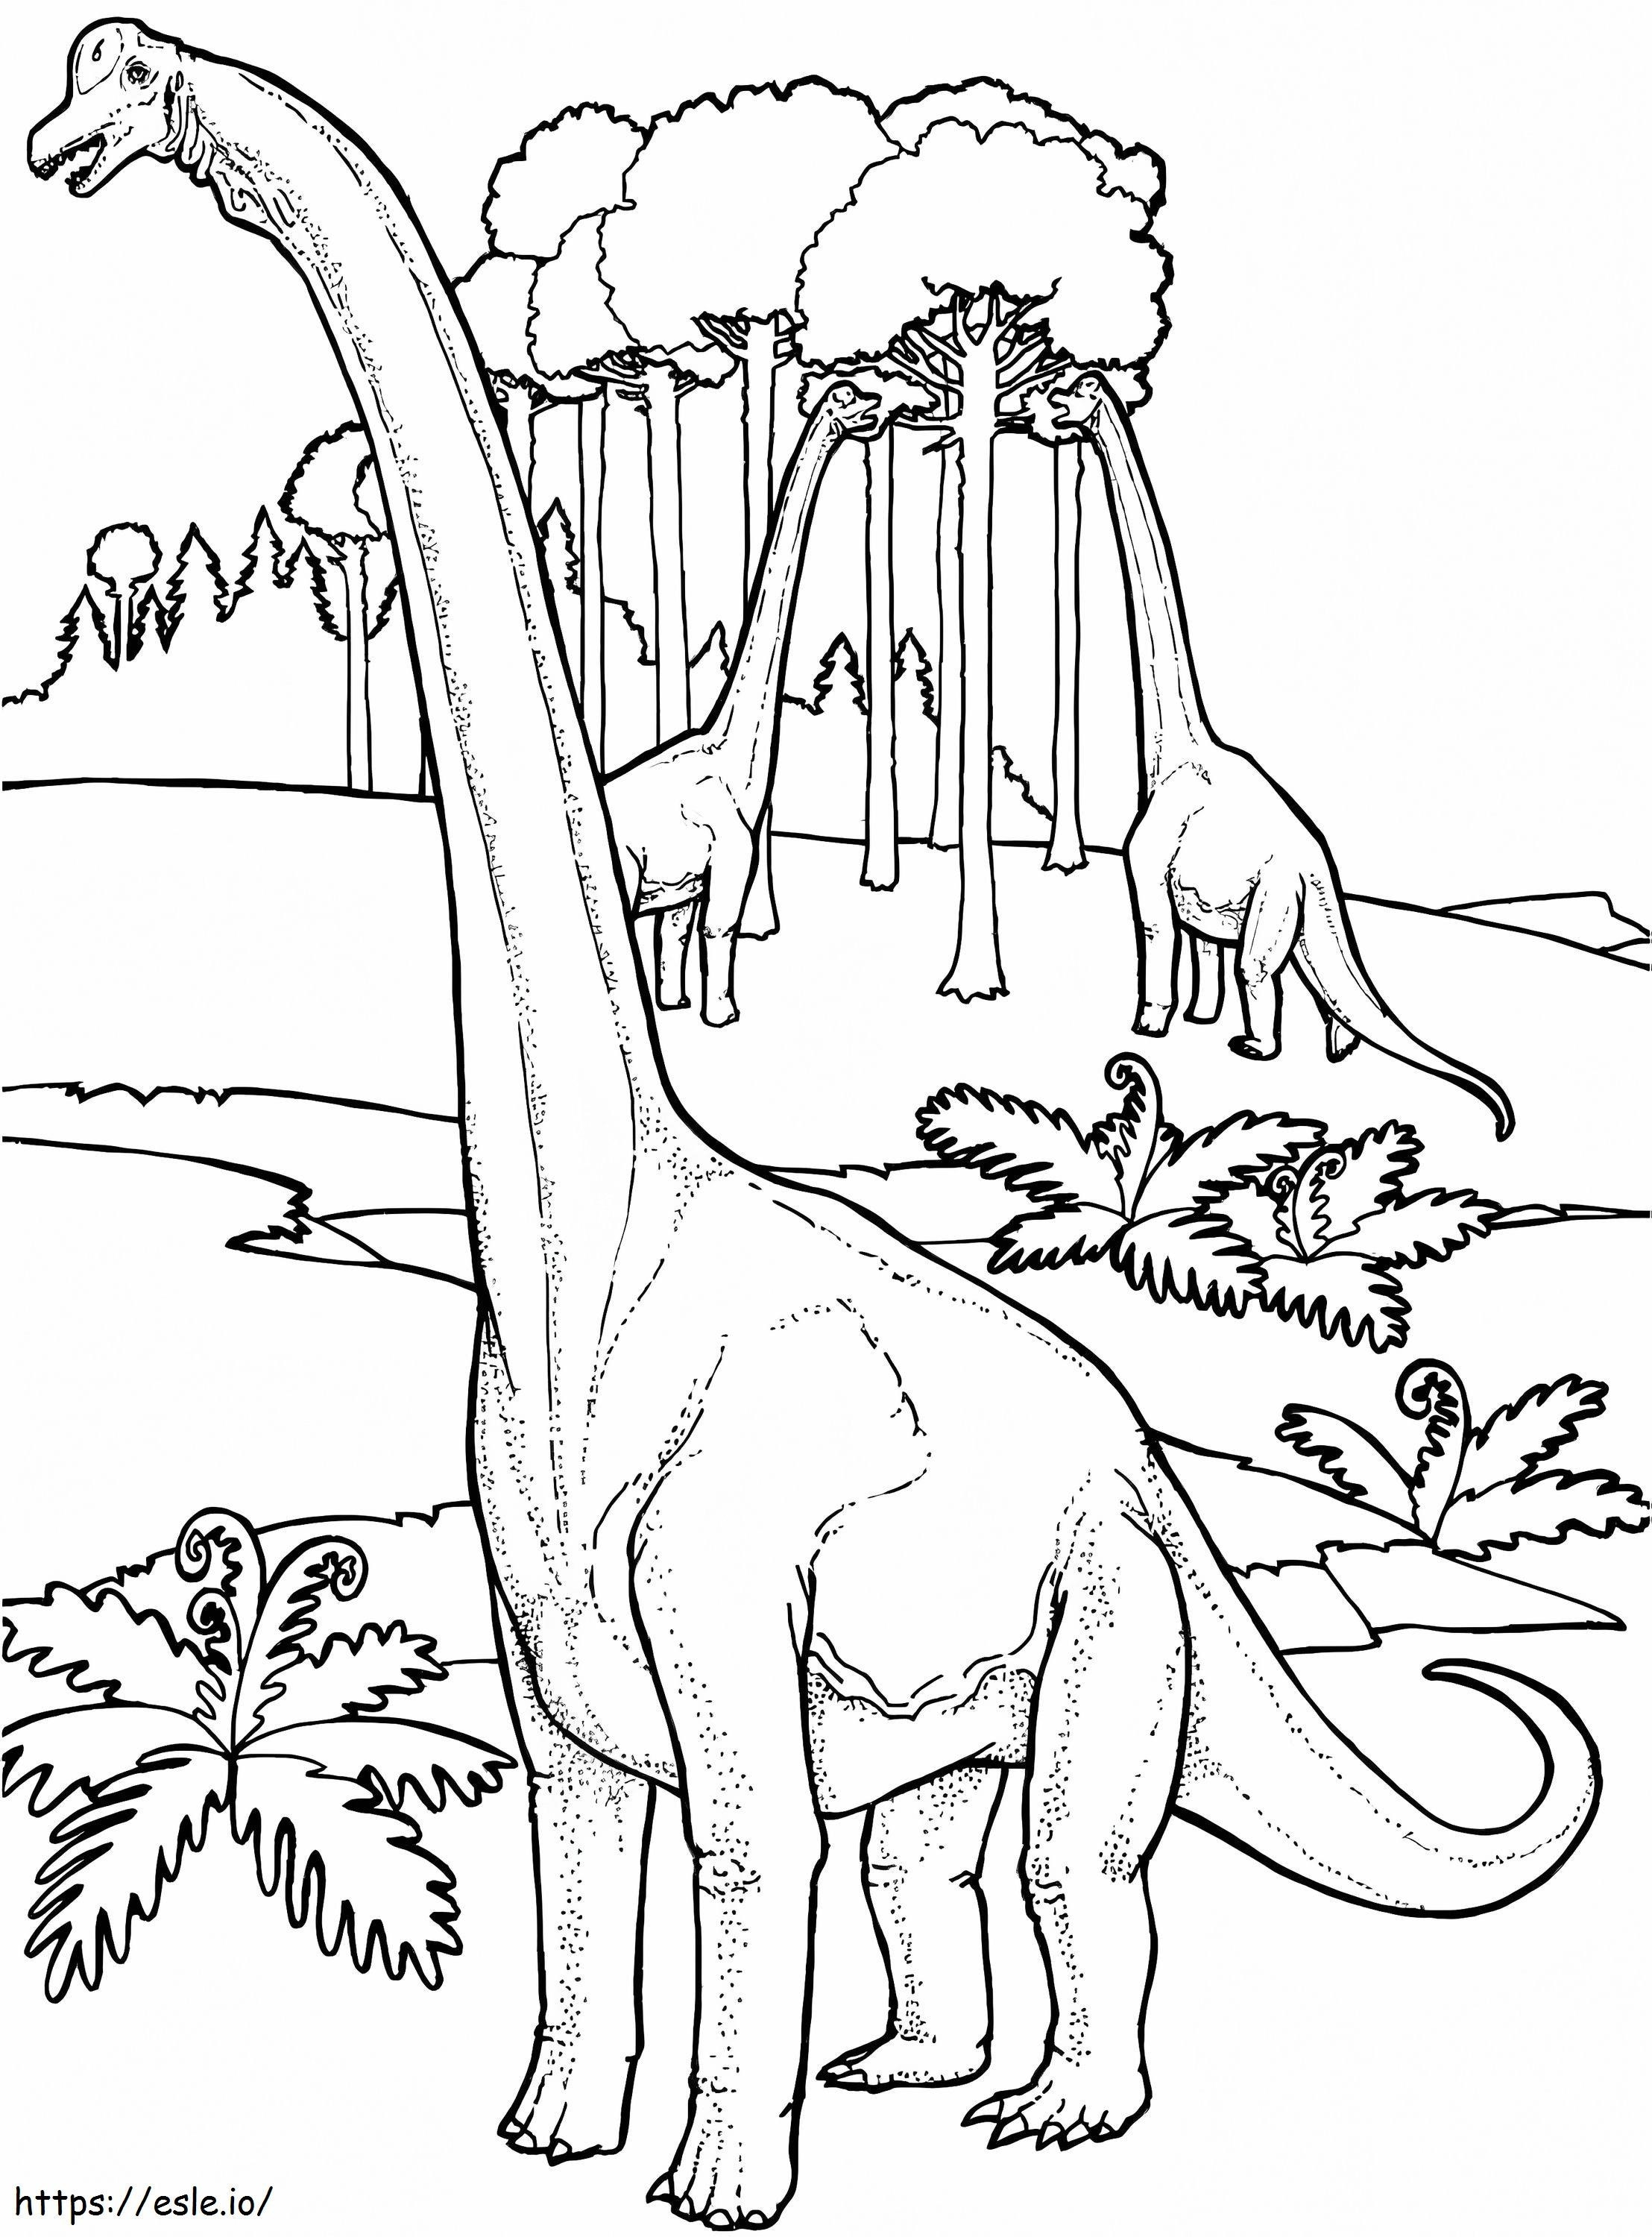 Brachiosauro 3 da colorare